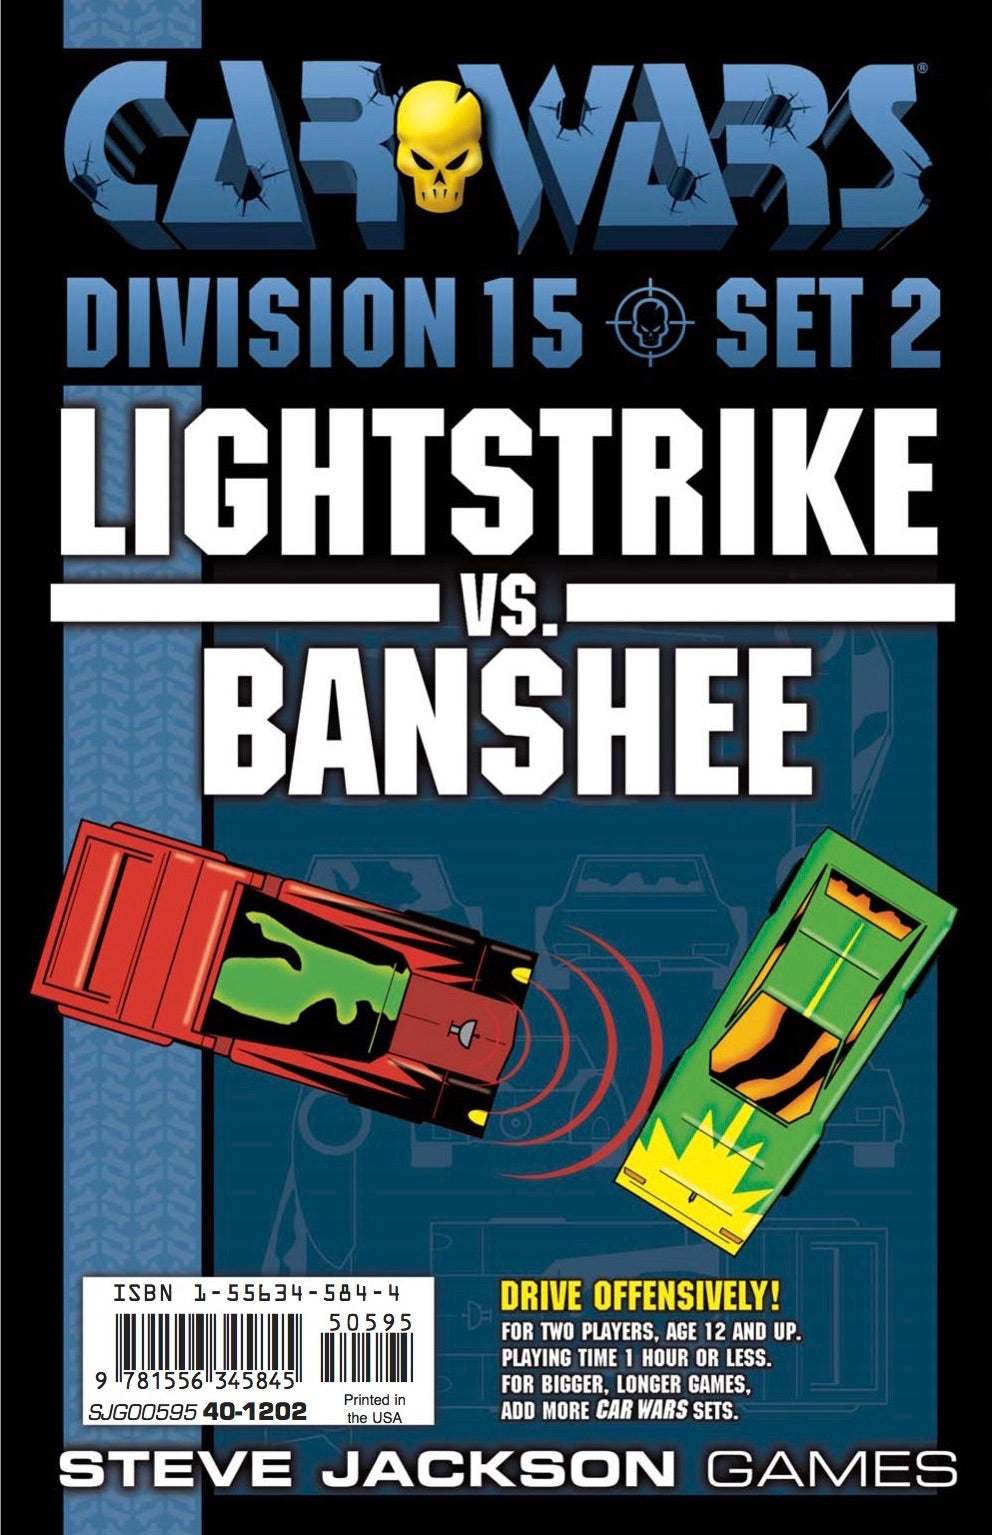 Car Wars Division 15 Set 2 - Lightstrike vs. Banshee